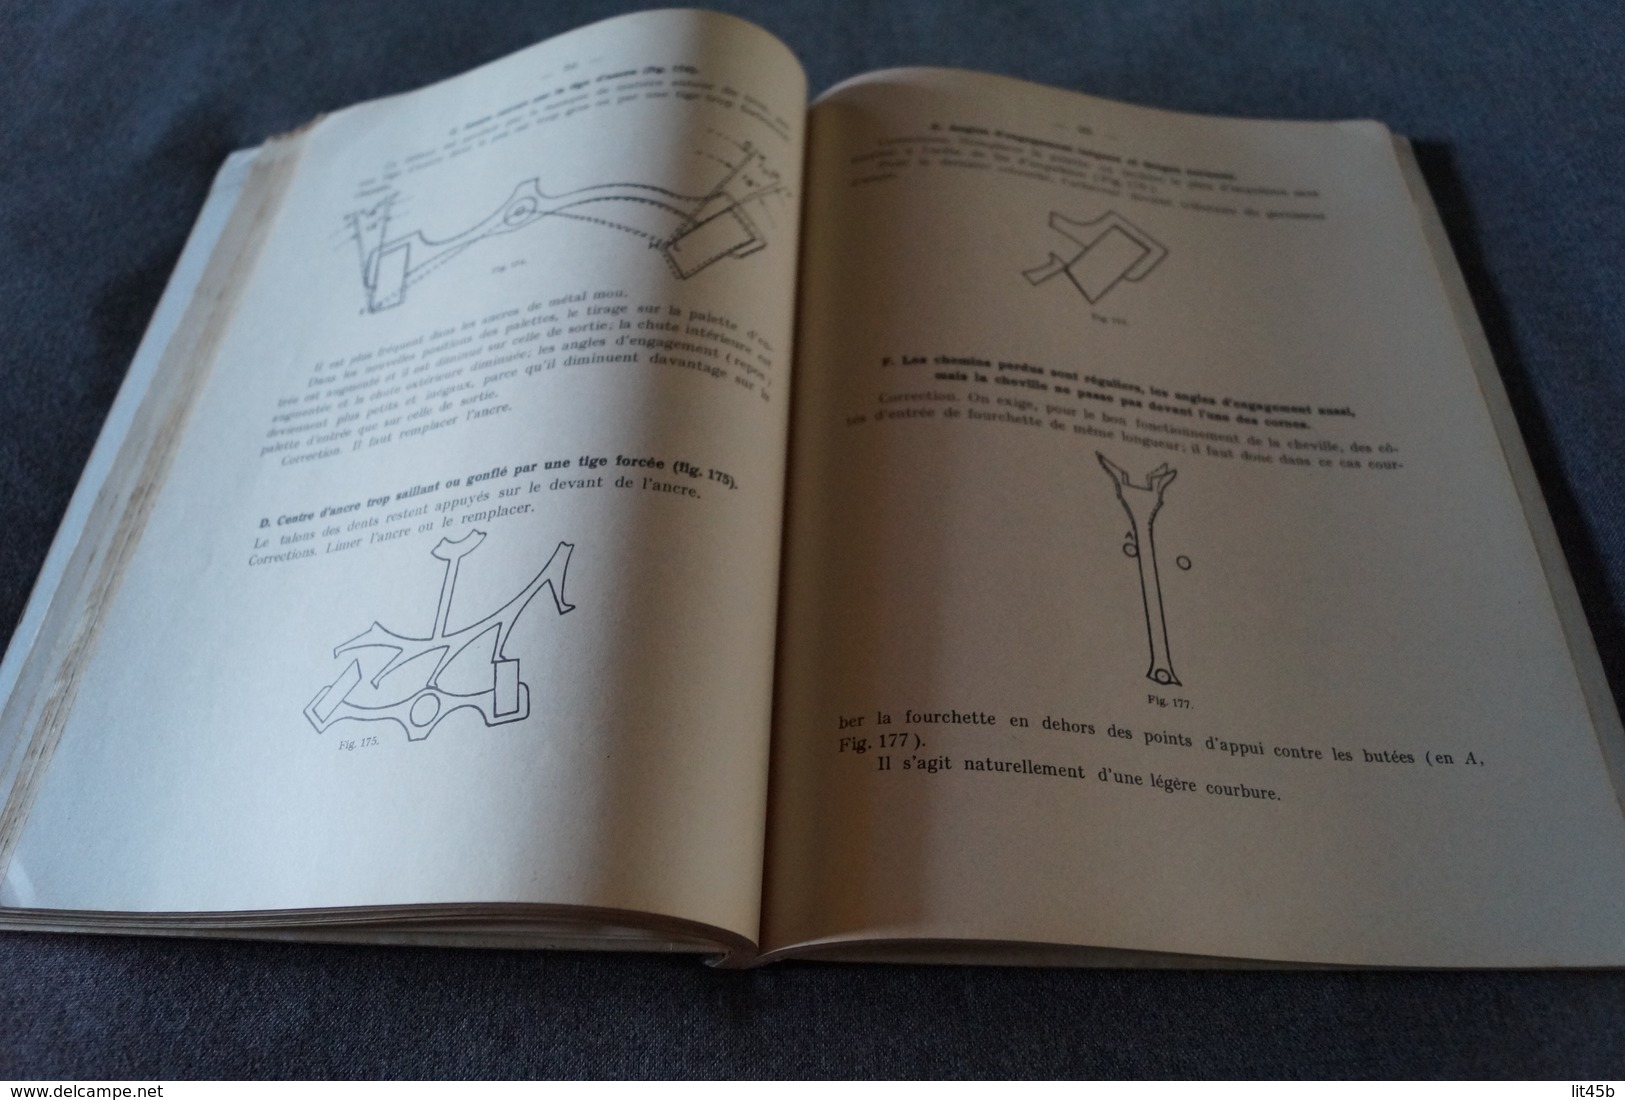 Ancien ouvrage originale Cours d'échapements écoles Suisse d'Horlogerie 1954,126 P.+ planches,27/21 Cm.